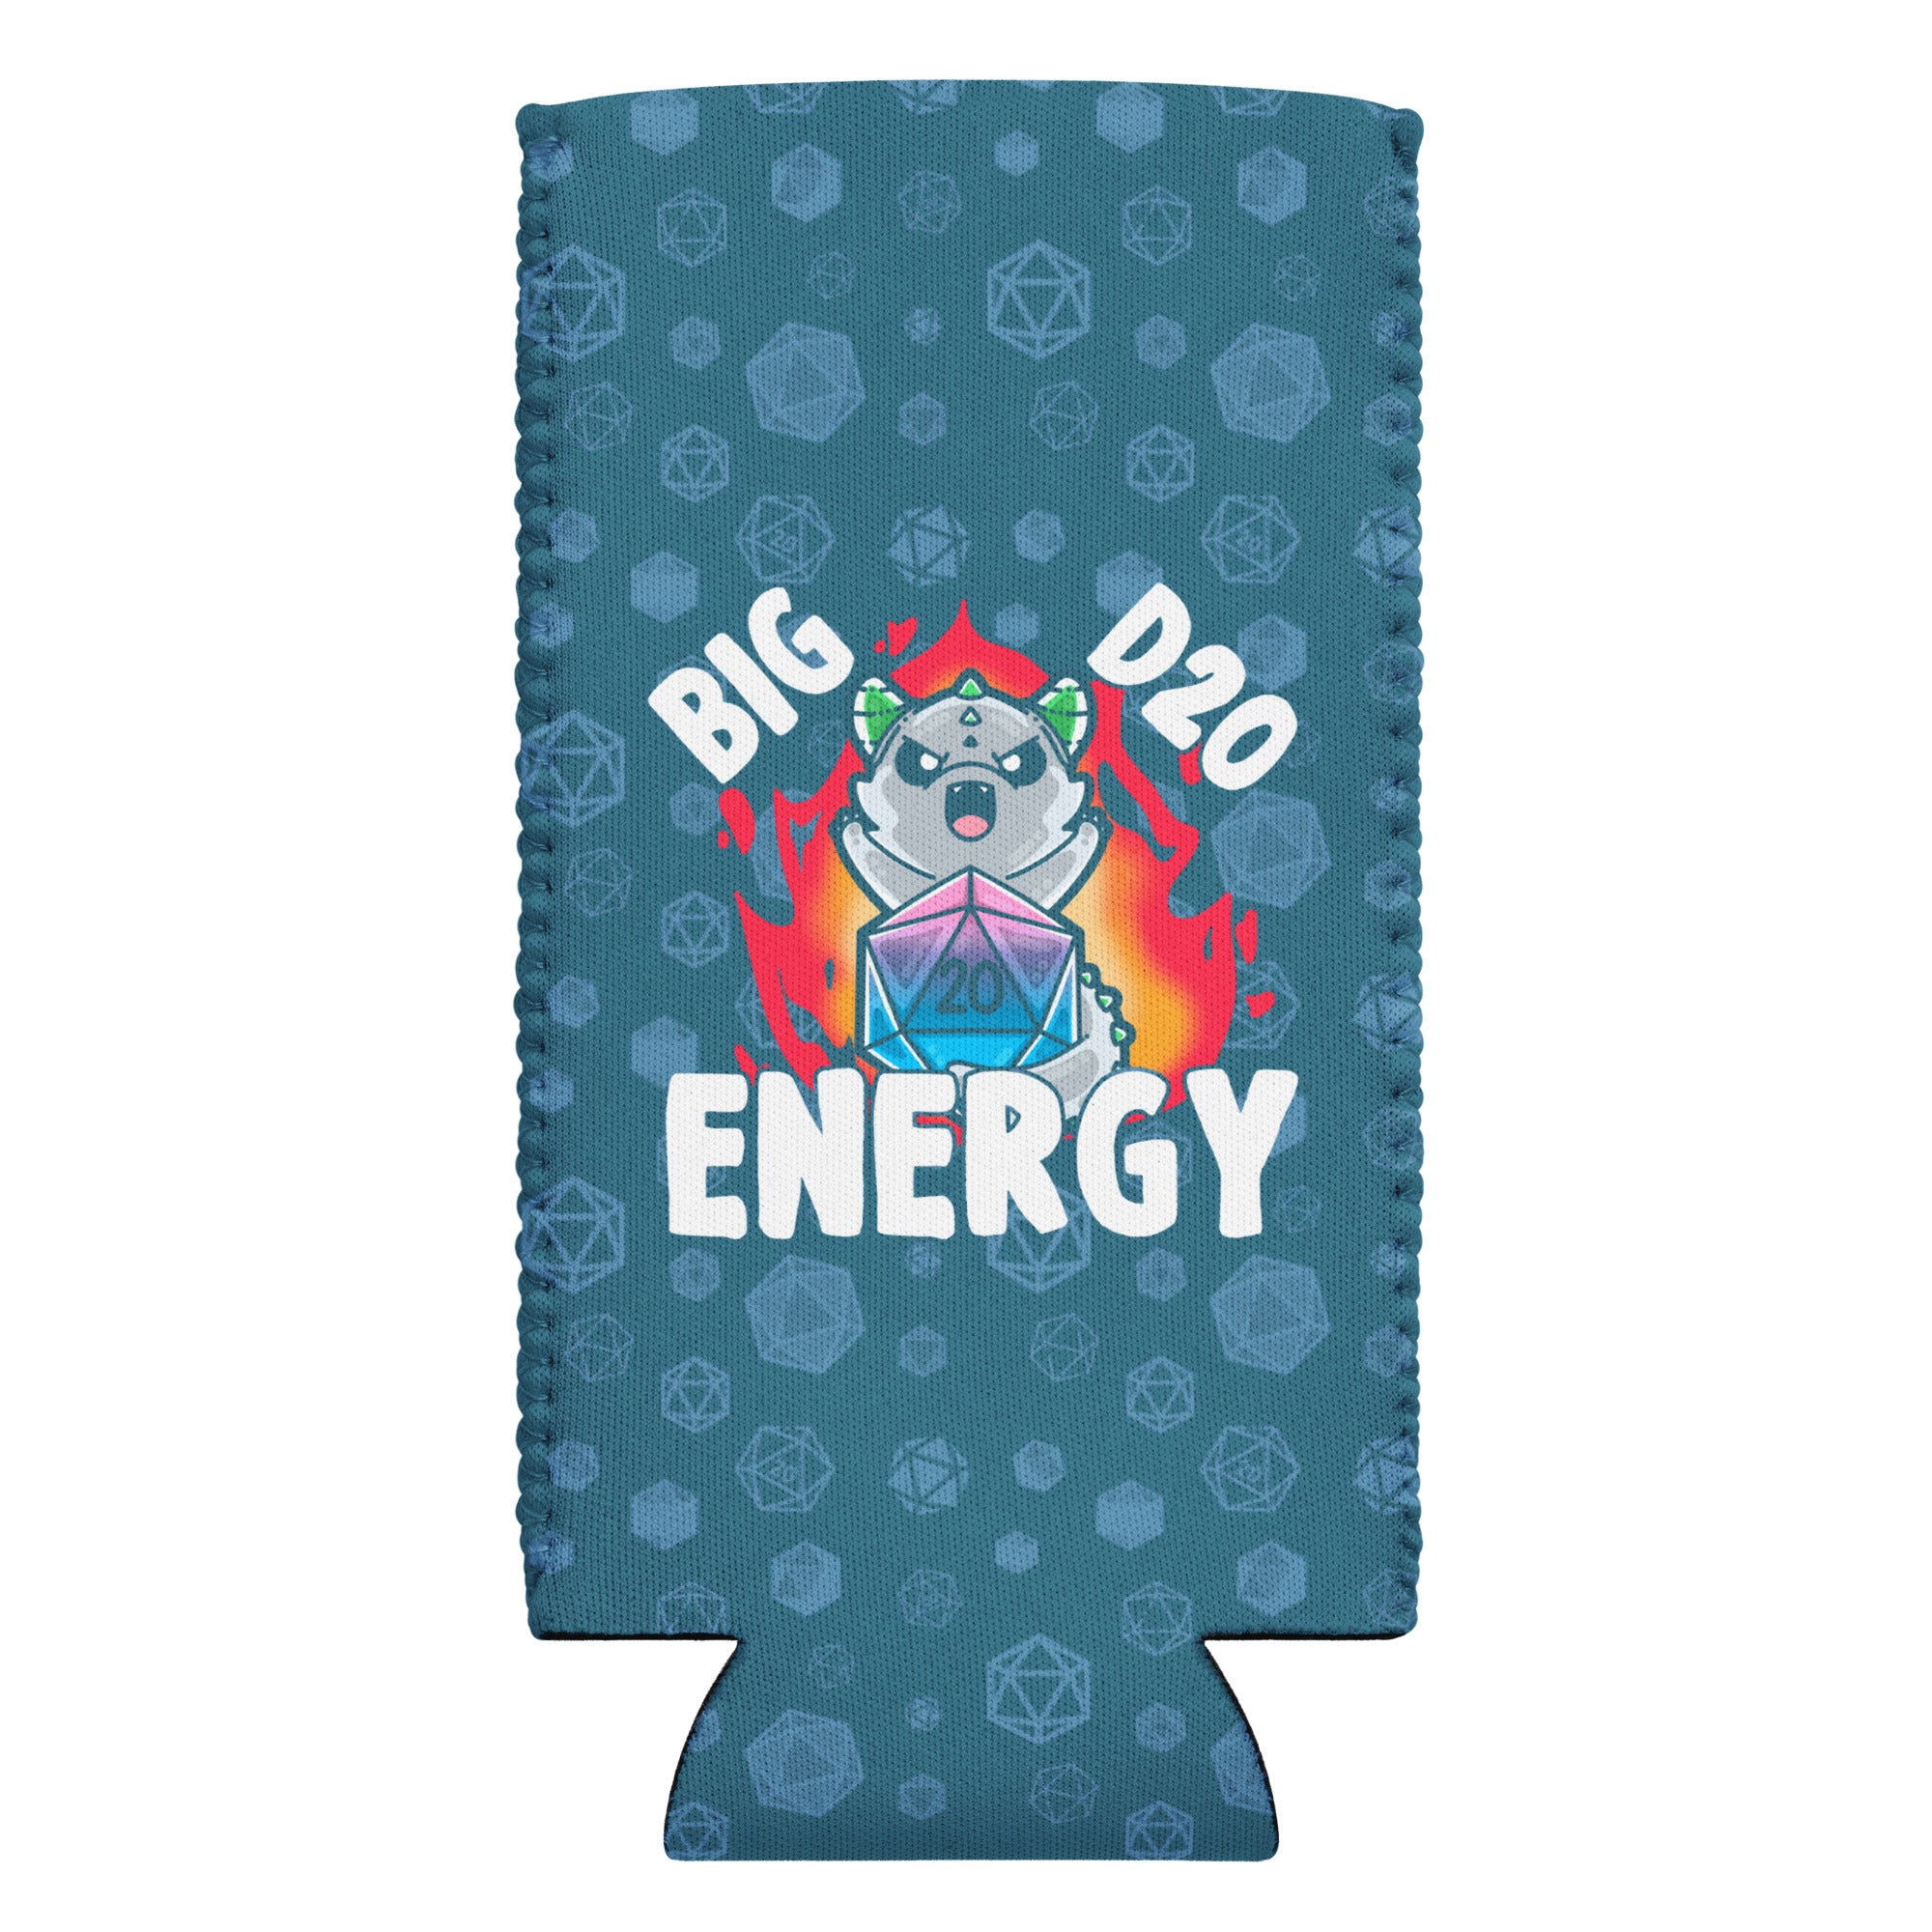 BIG D 20 ENERGY W/BACKGROUND - 12 oz Koozie